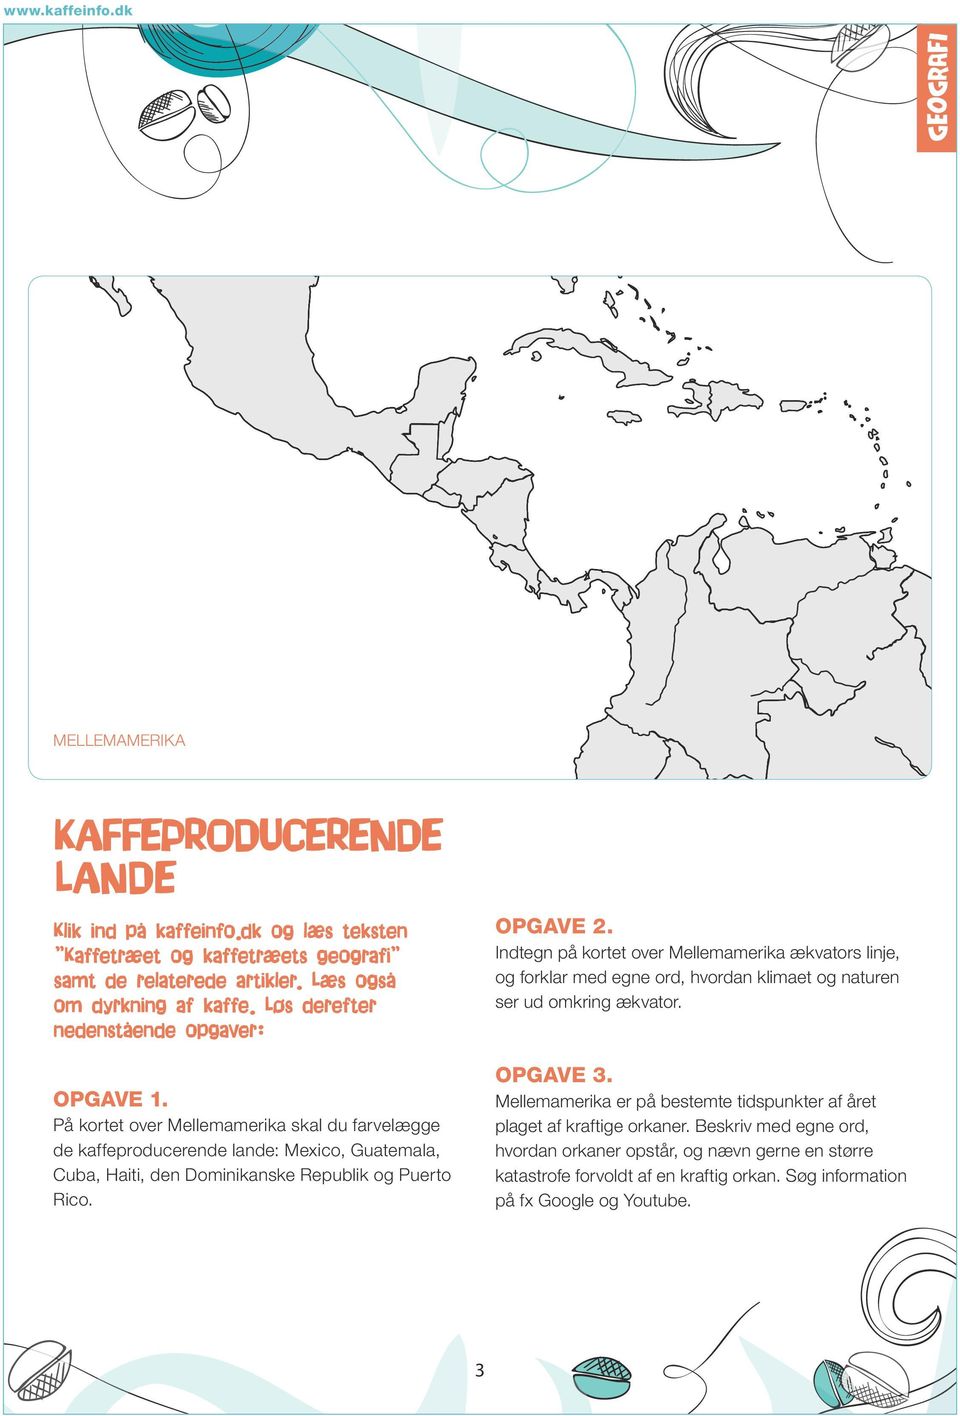 På kortet over Mellemamerika skal du farvelægge de kaffeproducerende lande: Mexico, Guatemala, Cuba, Haiti, den Dominikanske Republik og